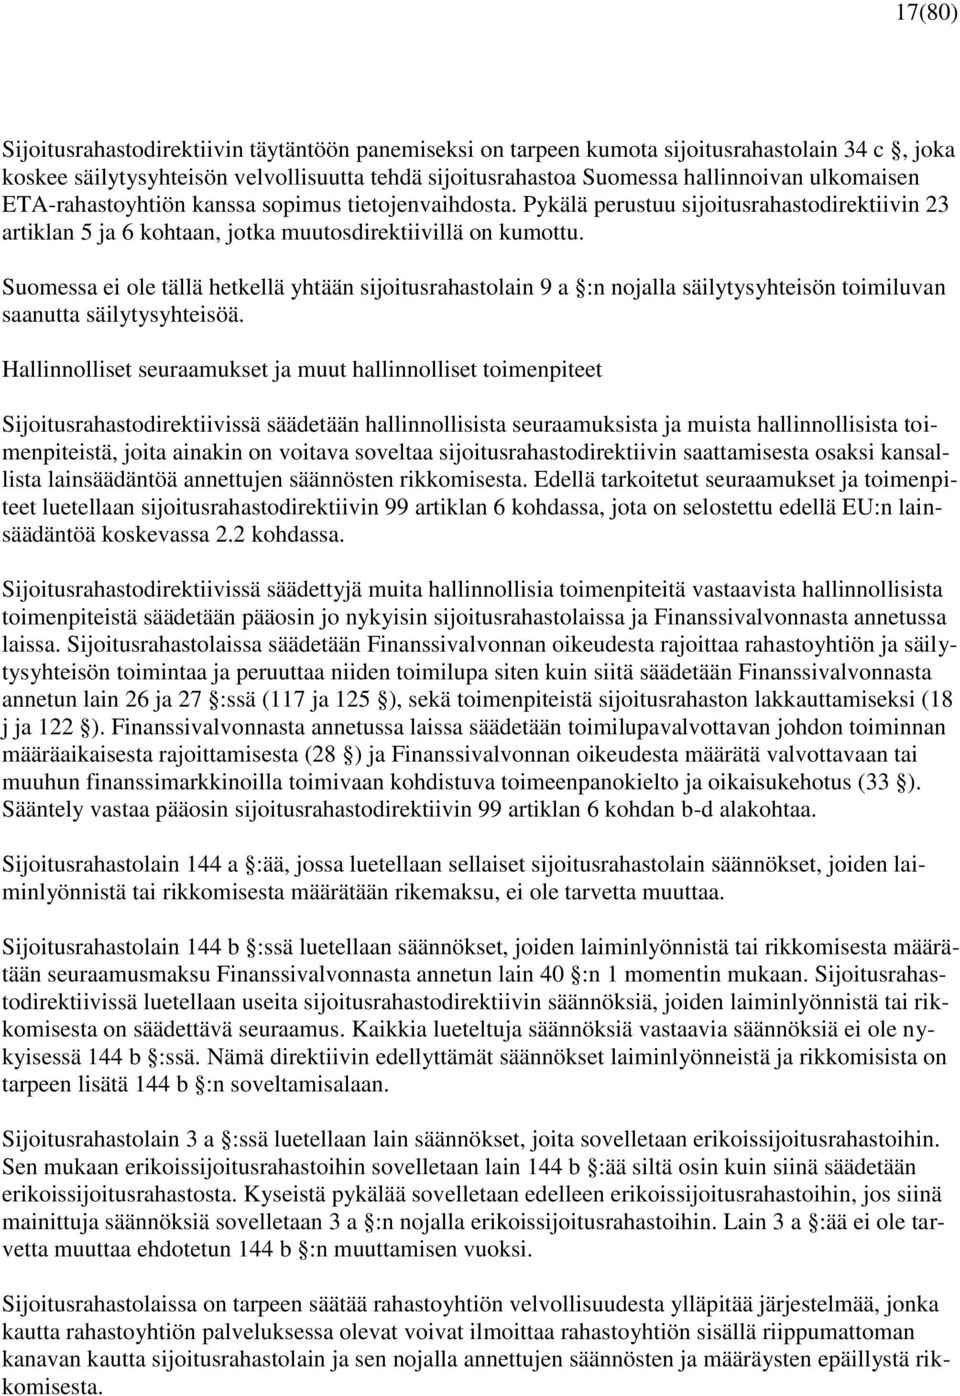 Suomessa ei ole tällä hetkellä yhtään sijoitusrahastolain 9 a :n nojalla säilytysyhteisön toimiluvan saanutta säilytysyhteisöä.